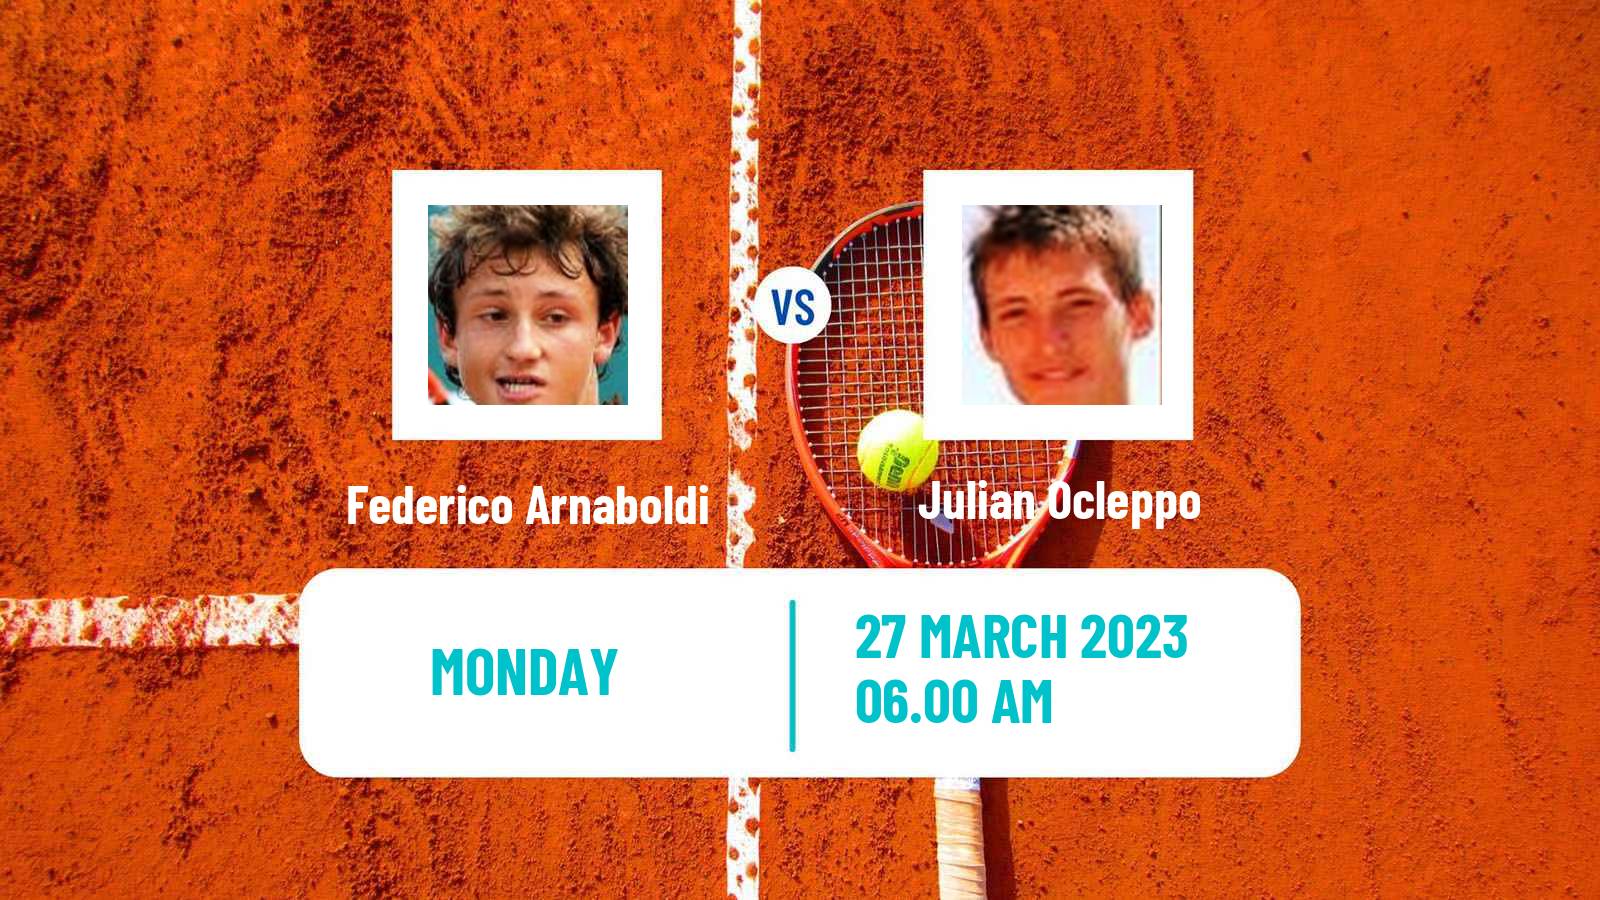 Tennis ATP Challenger Federico Arnaboldi - Julian Ocleppo